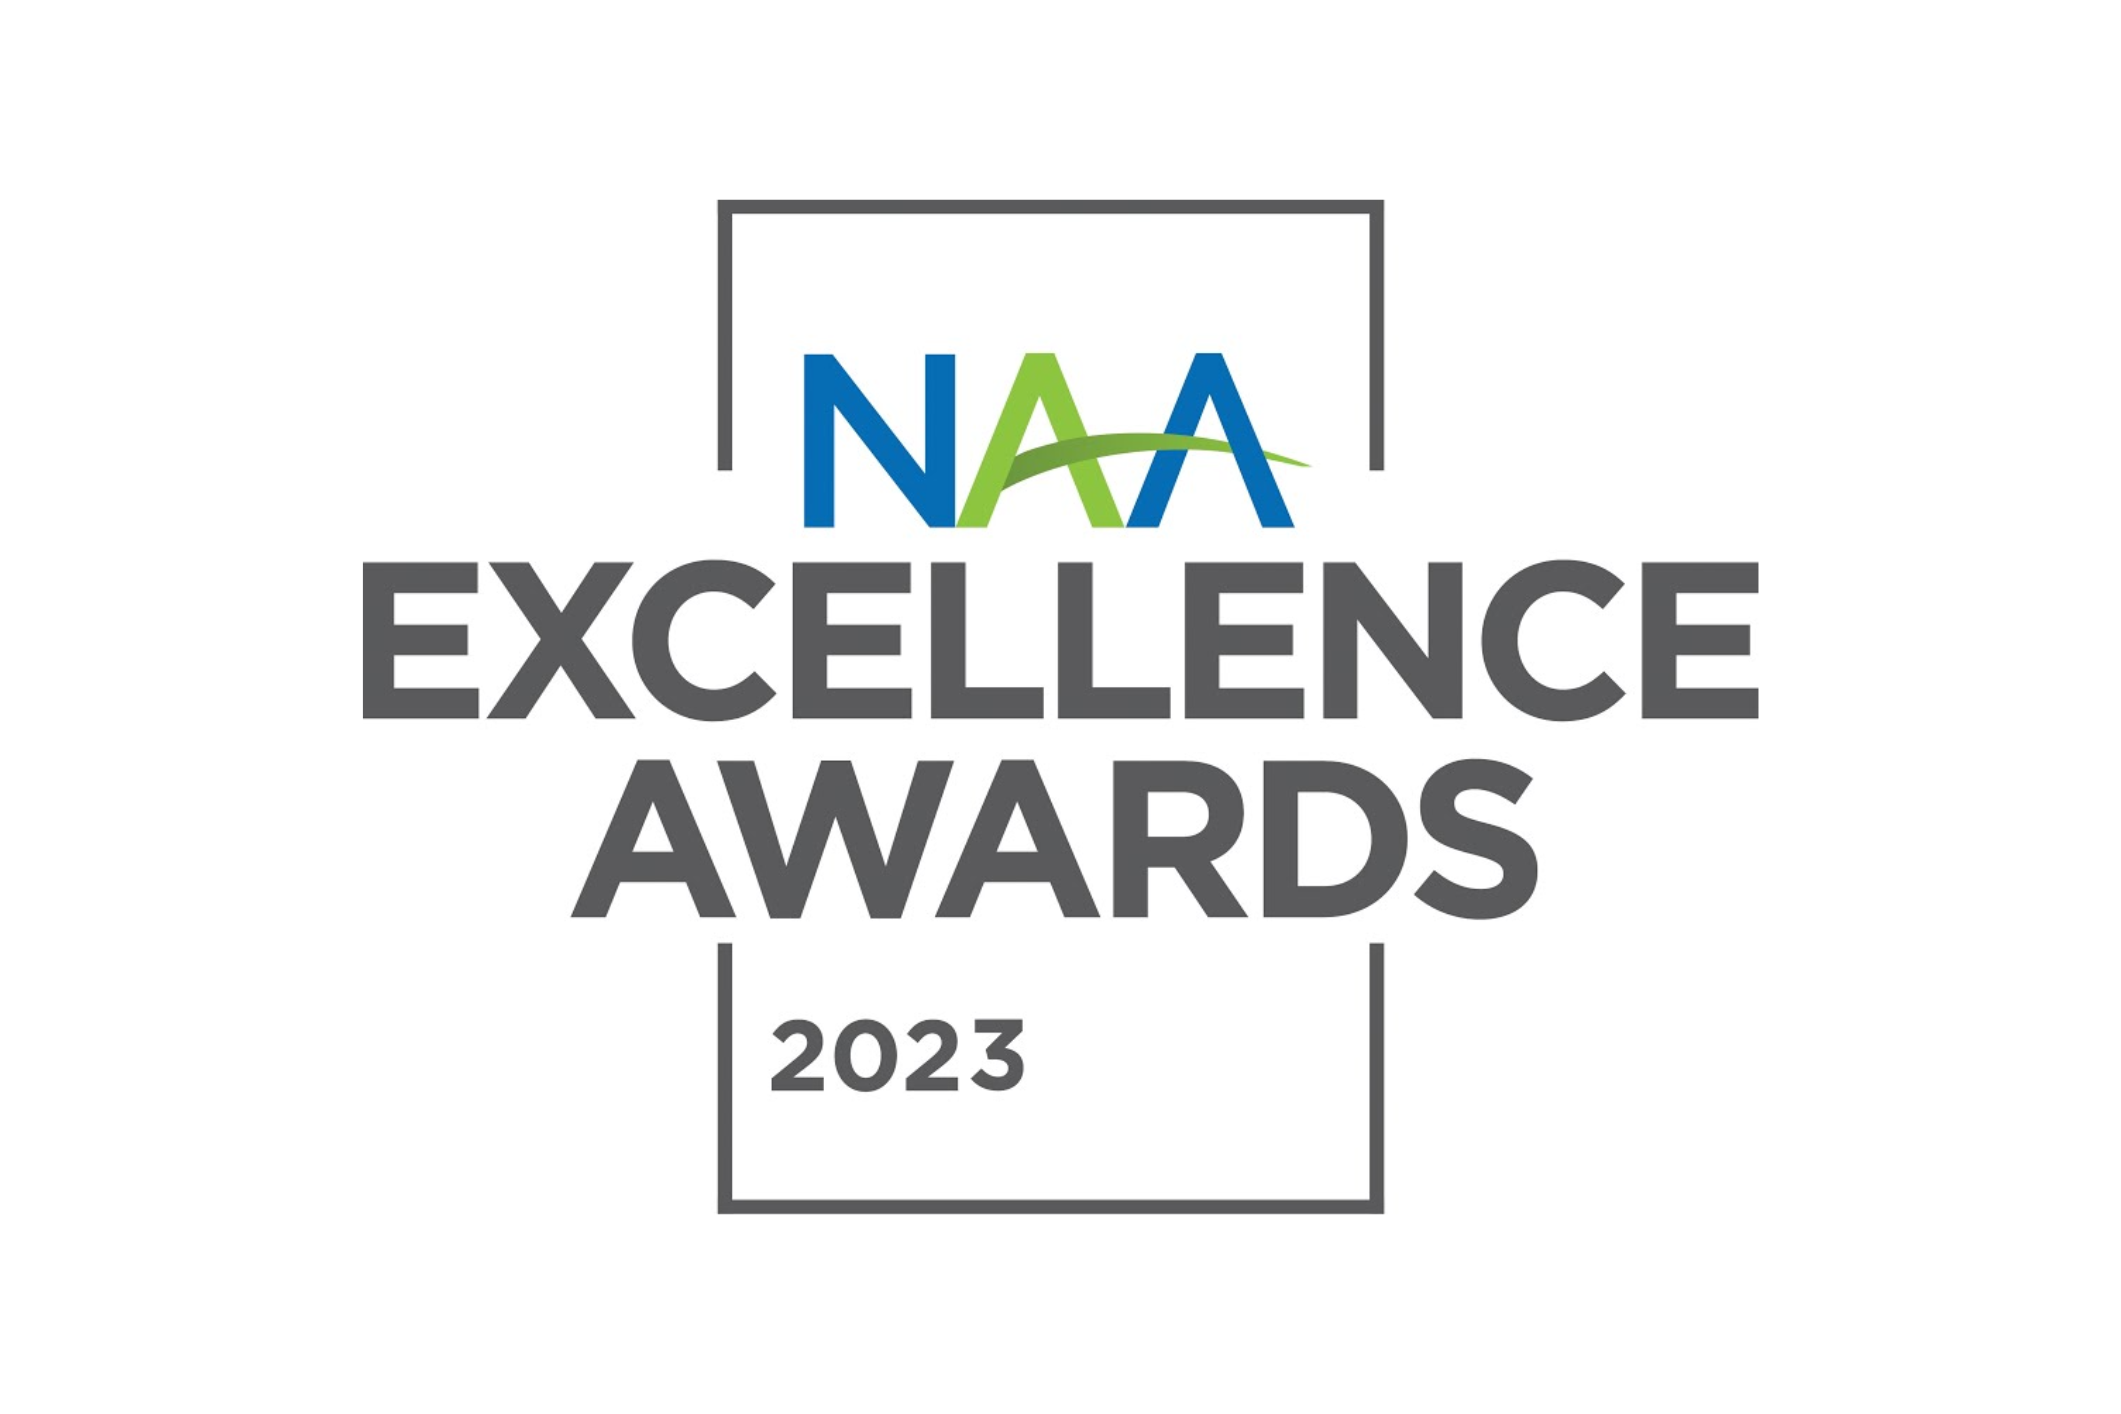 naa excellence awards 2023 logo